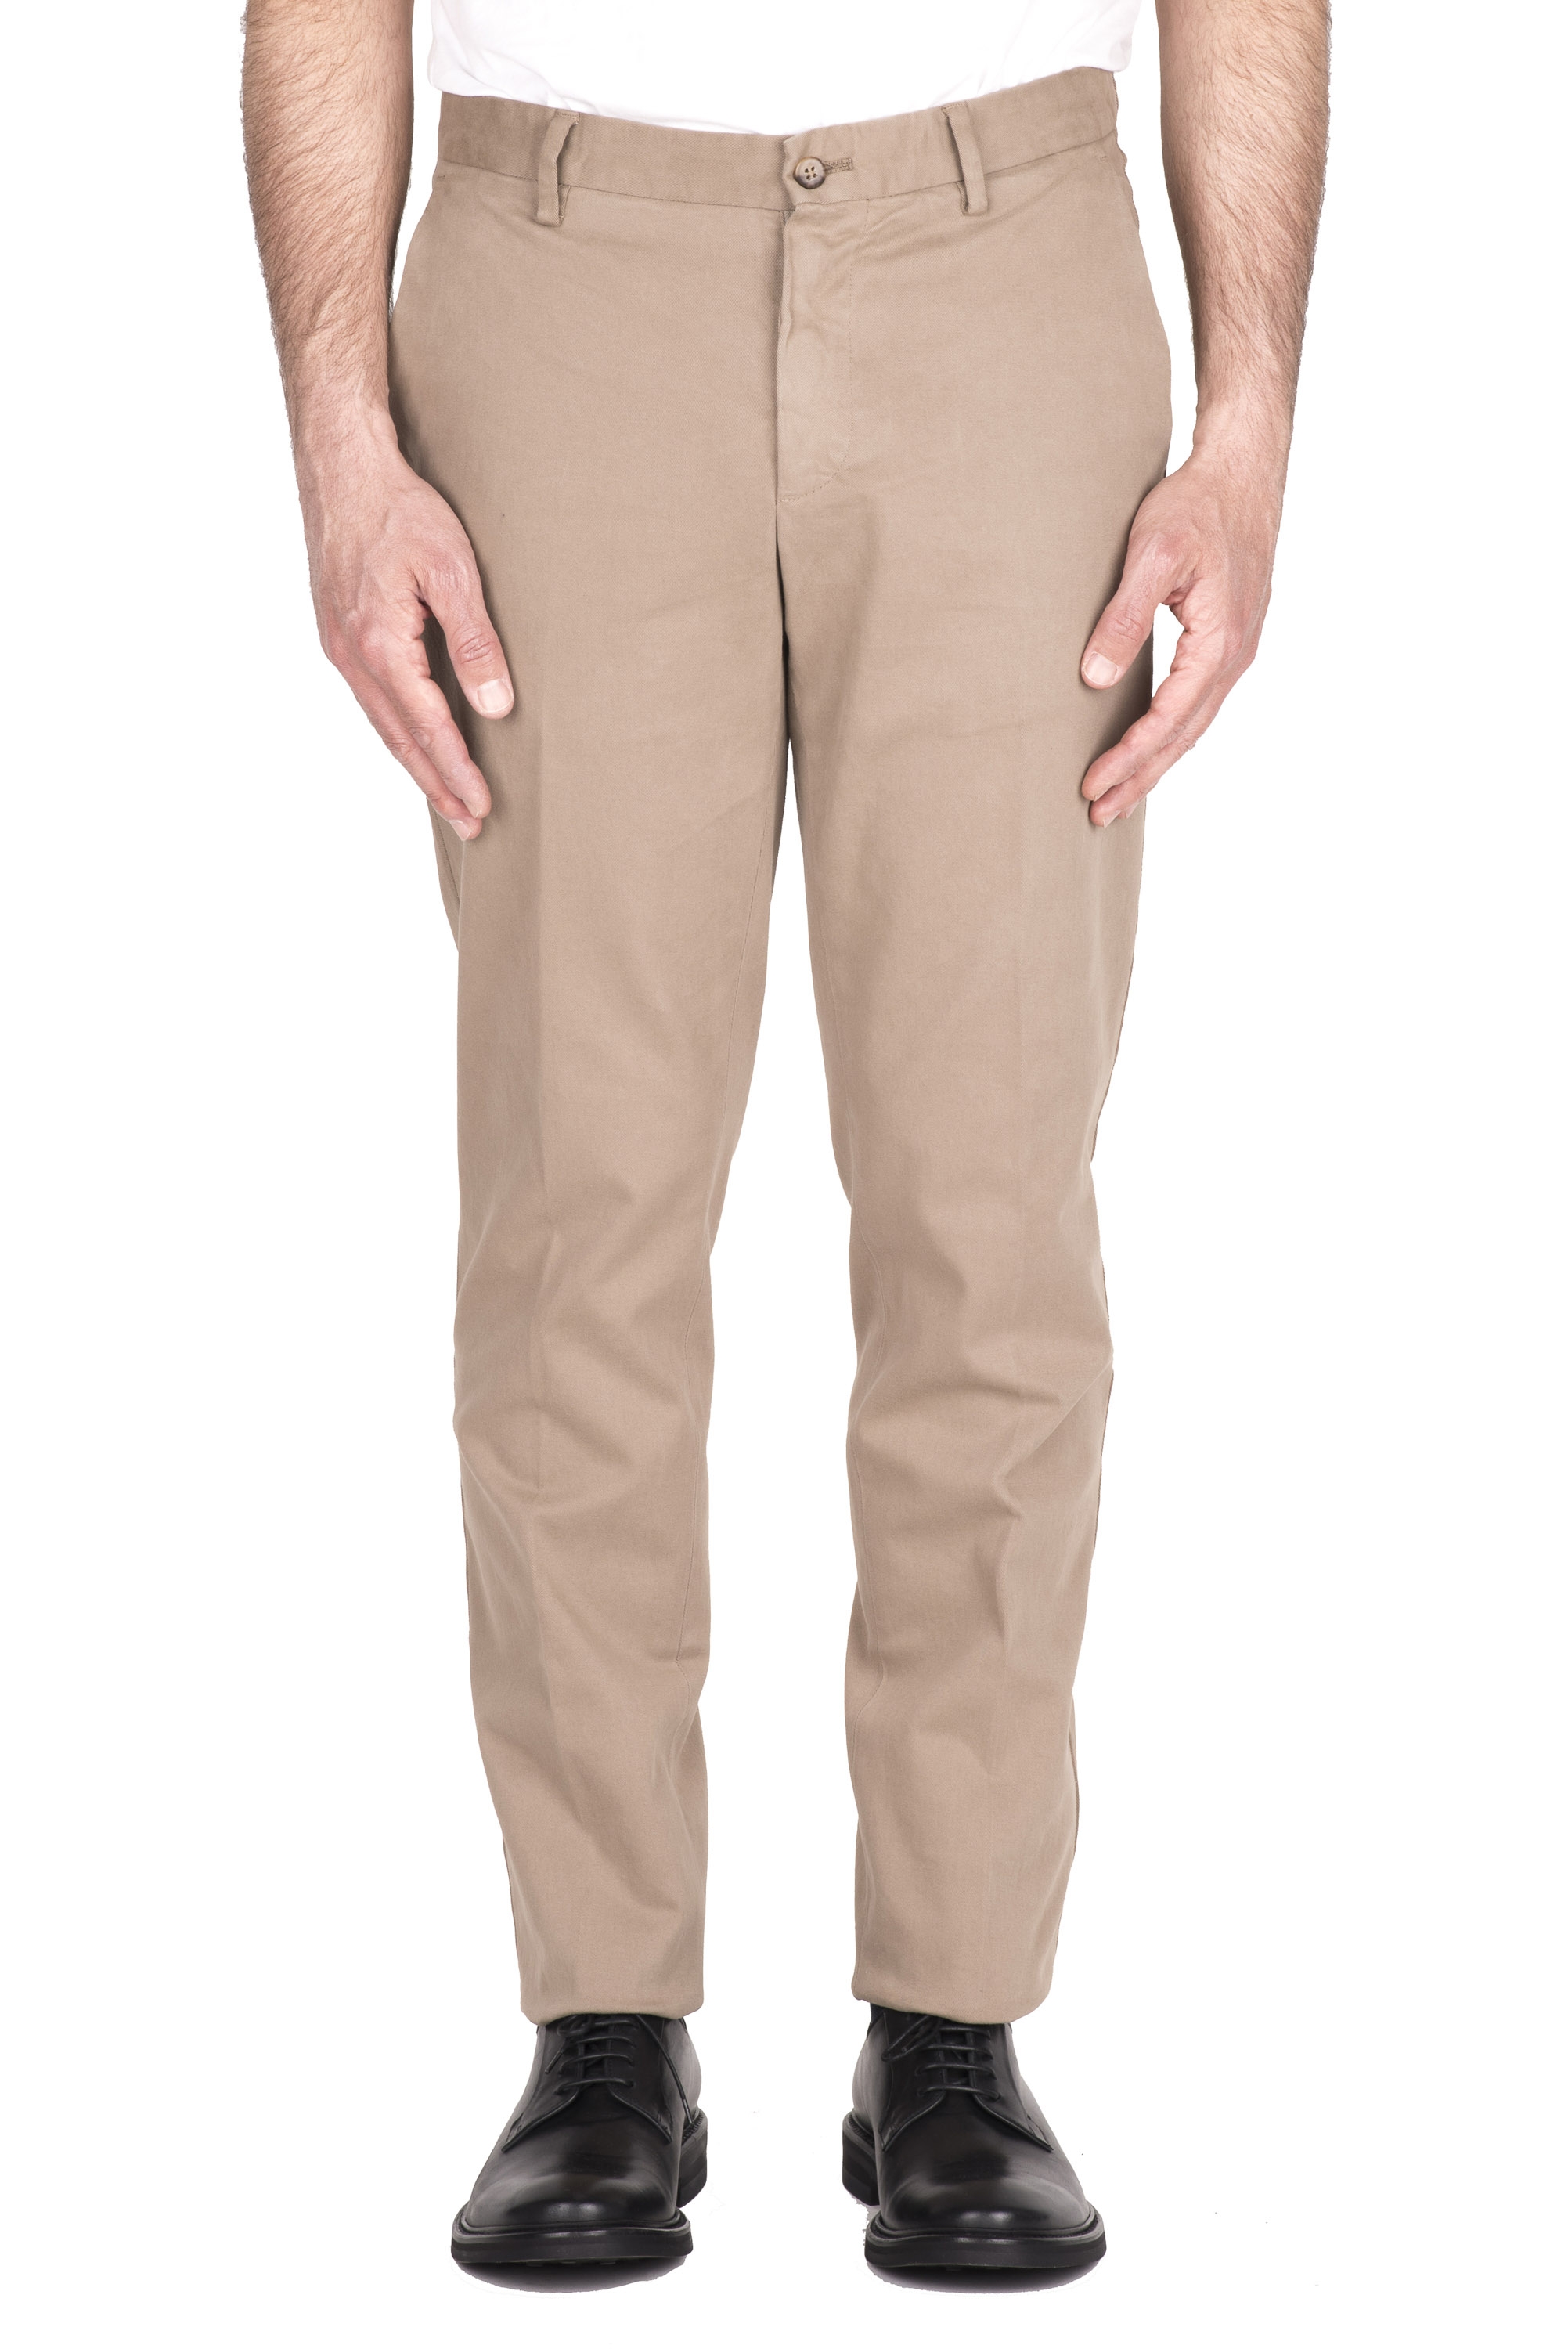 SBU 04607_23AW Pantaloni chino classici in cotone stretch beige 01